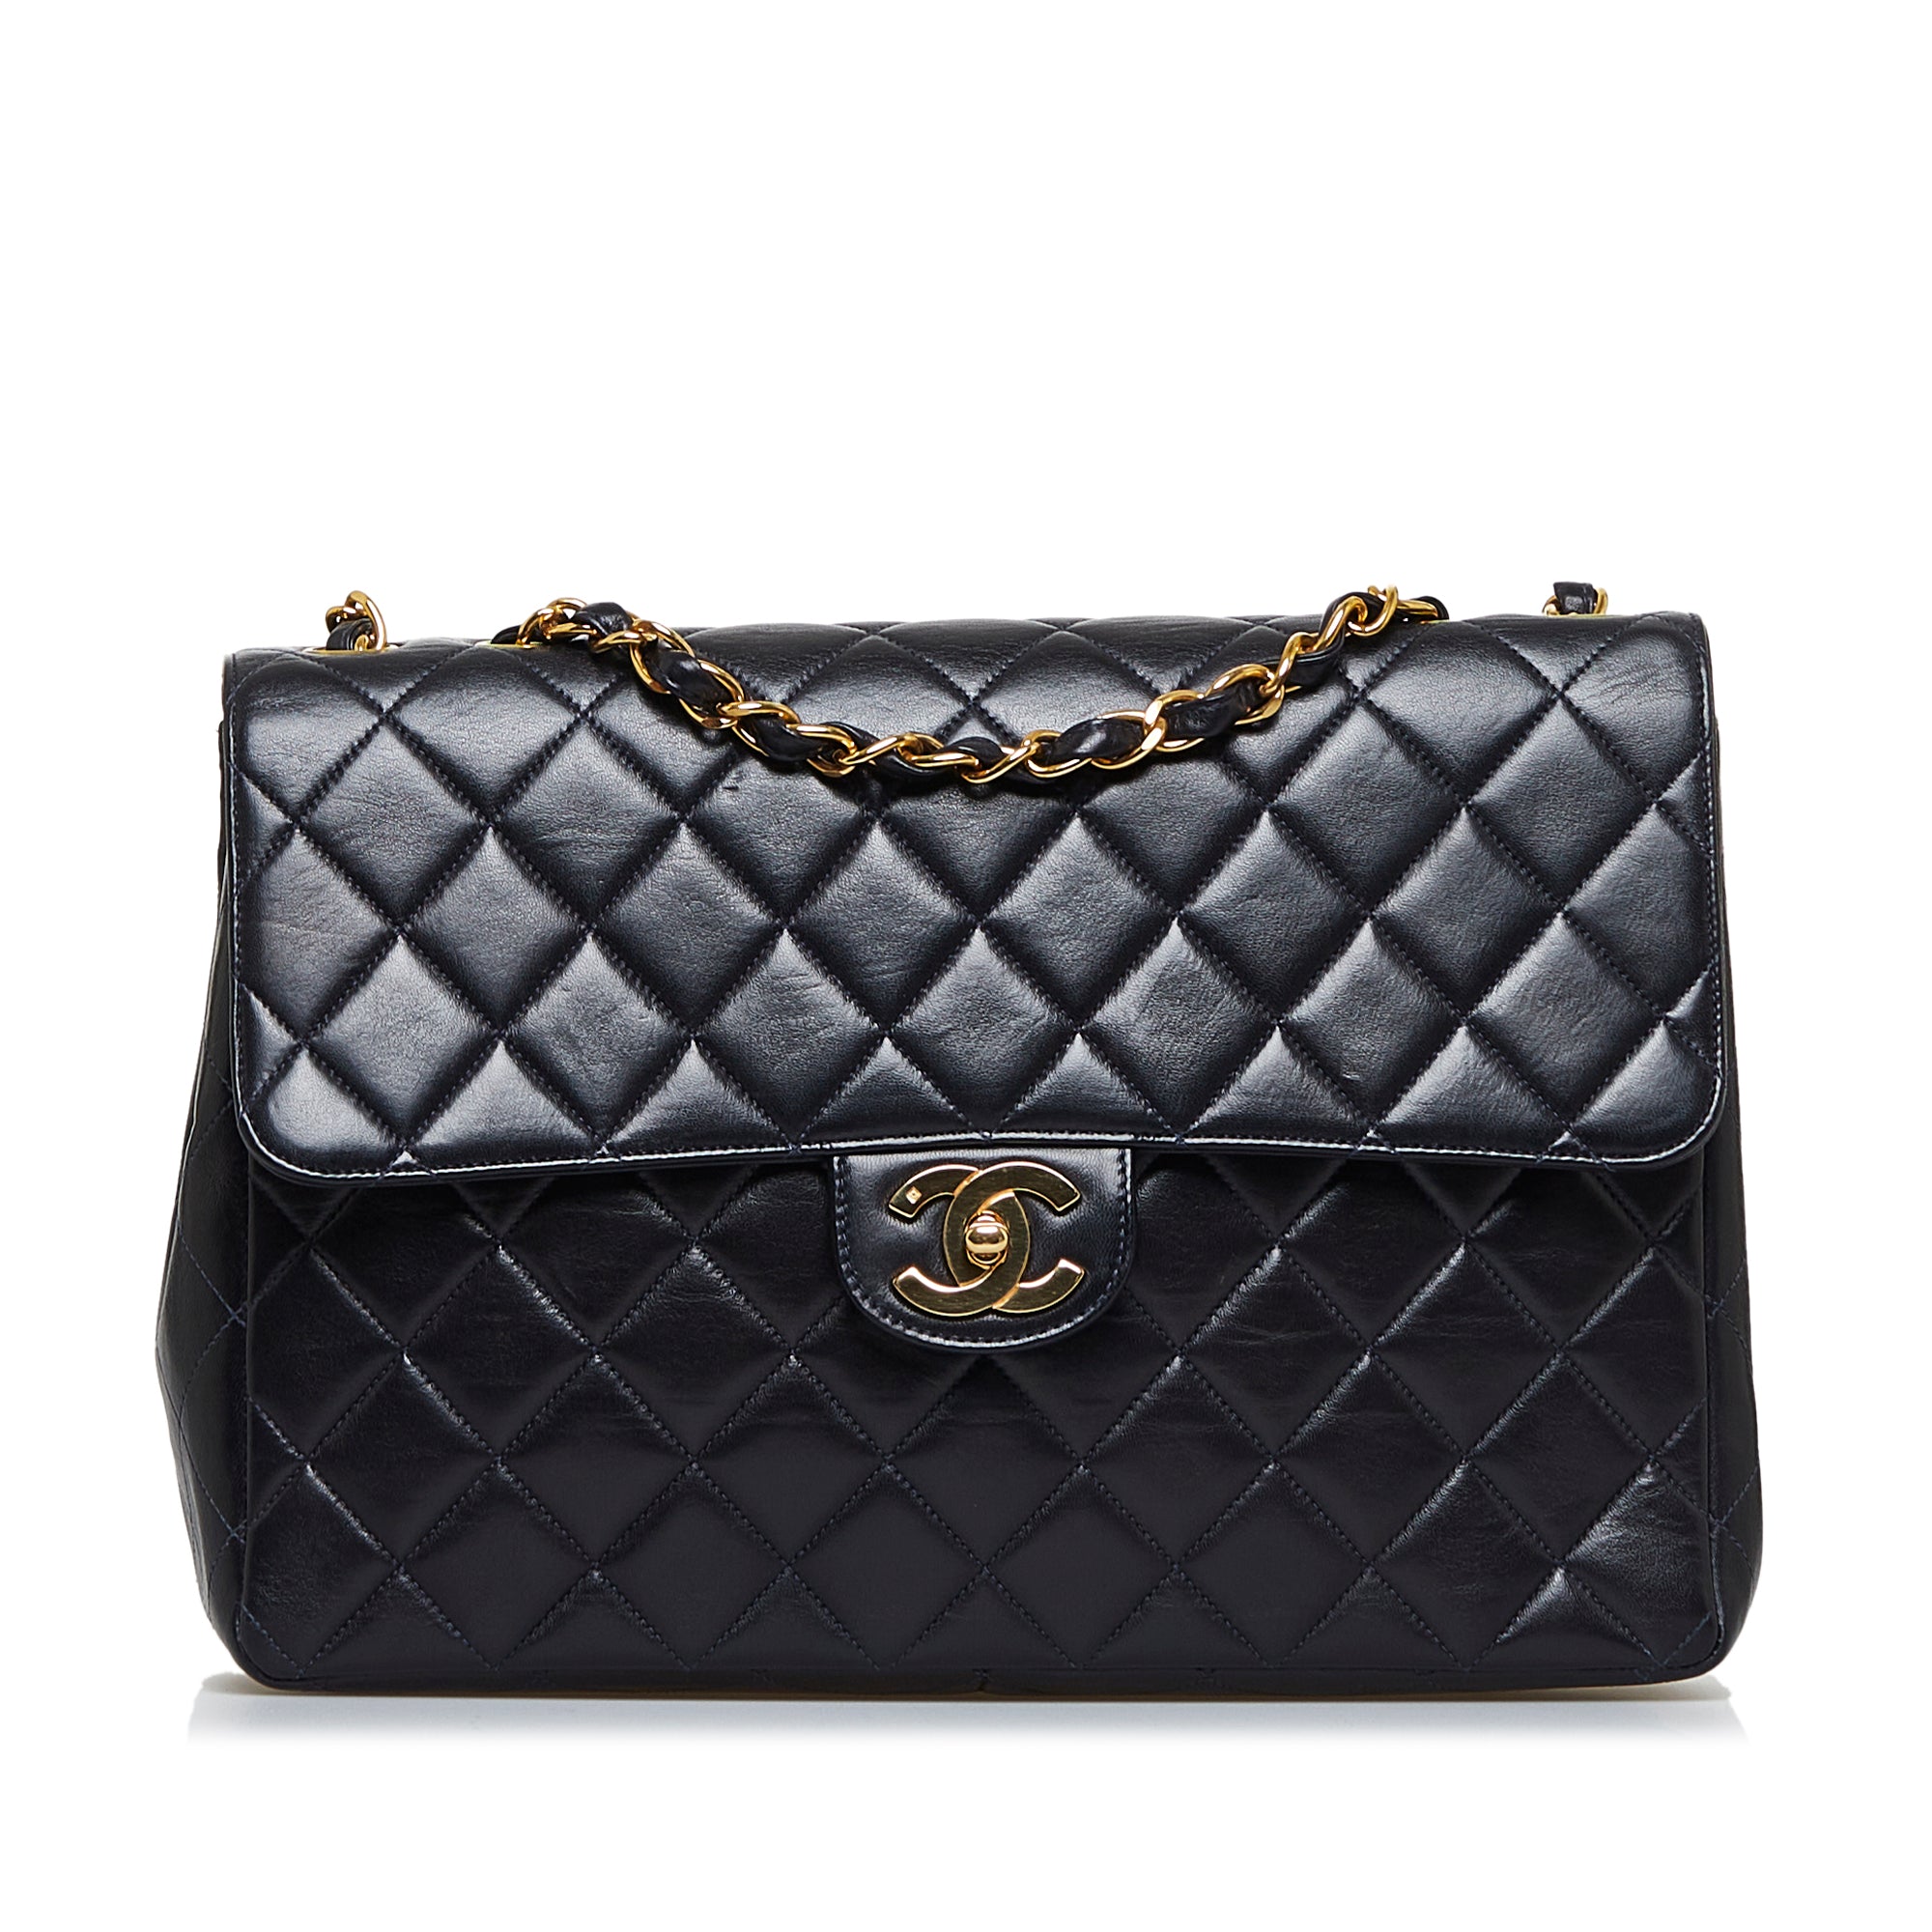 Gold Chanel CC Belt Bag, RvceShops Revival